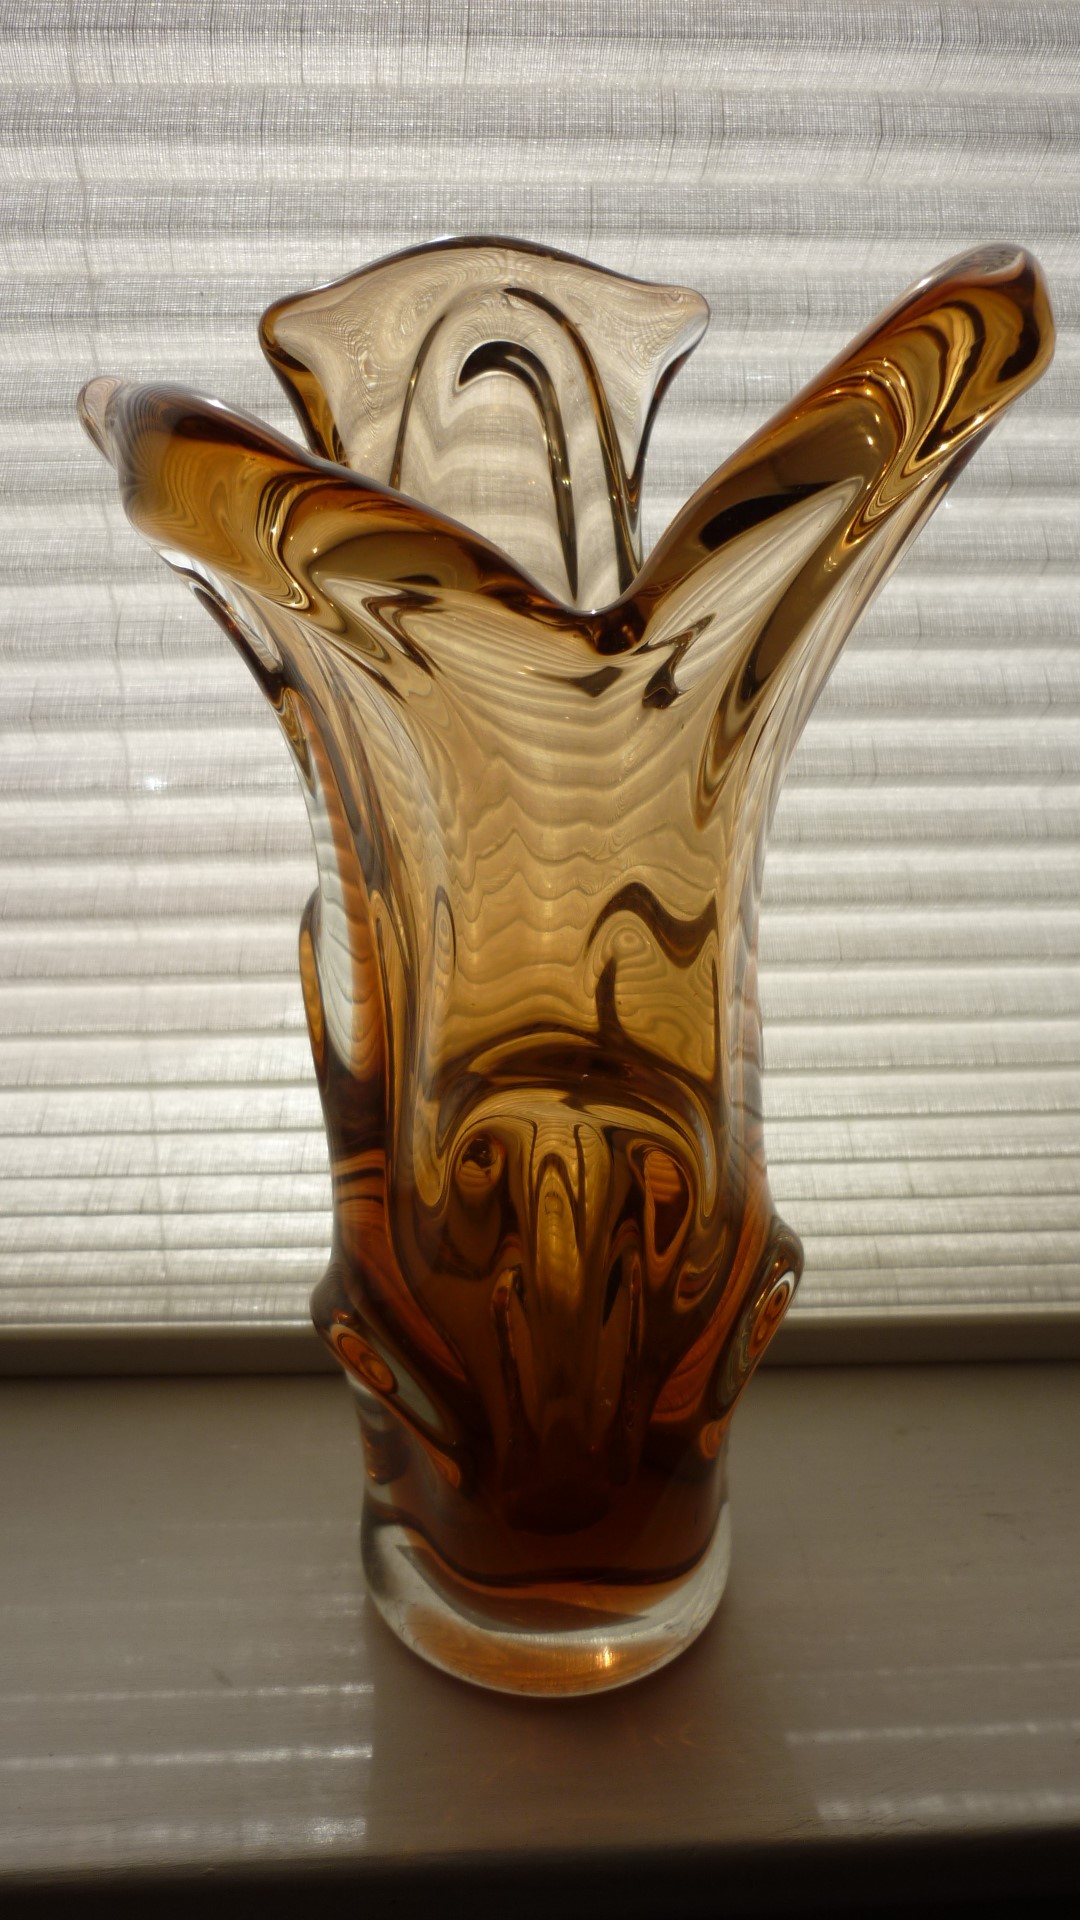 1960s Skrdlovice Czech glass vase, most likely the work of Jan Kotik. 